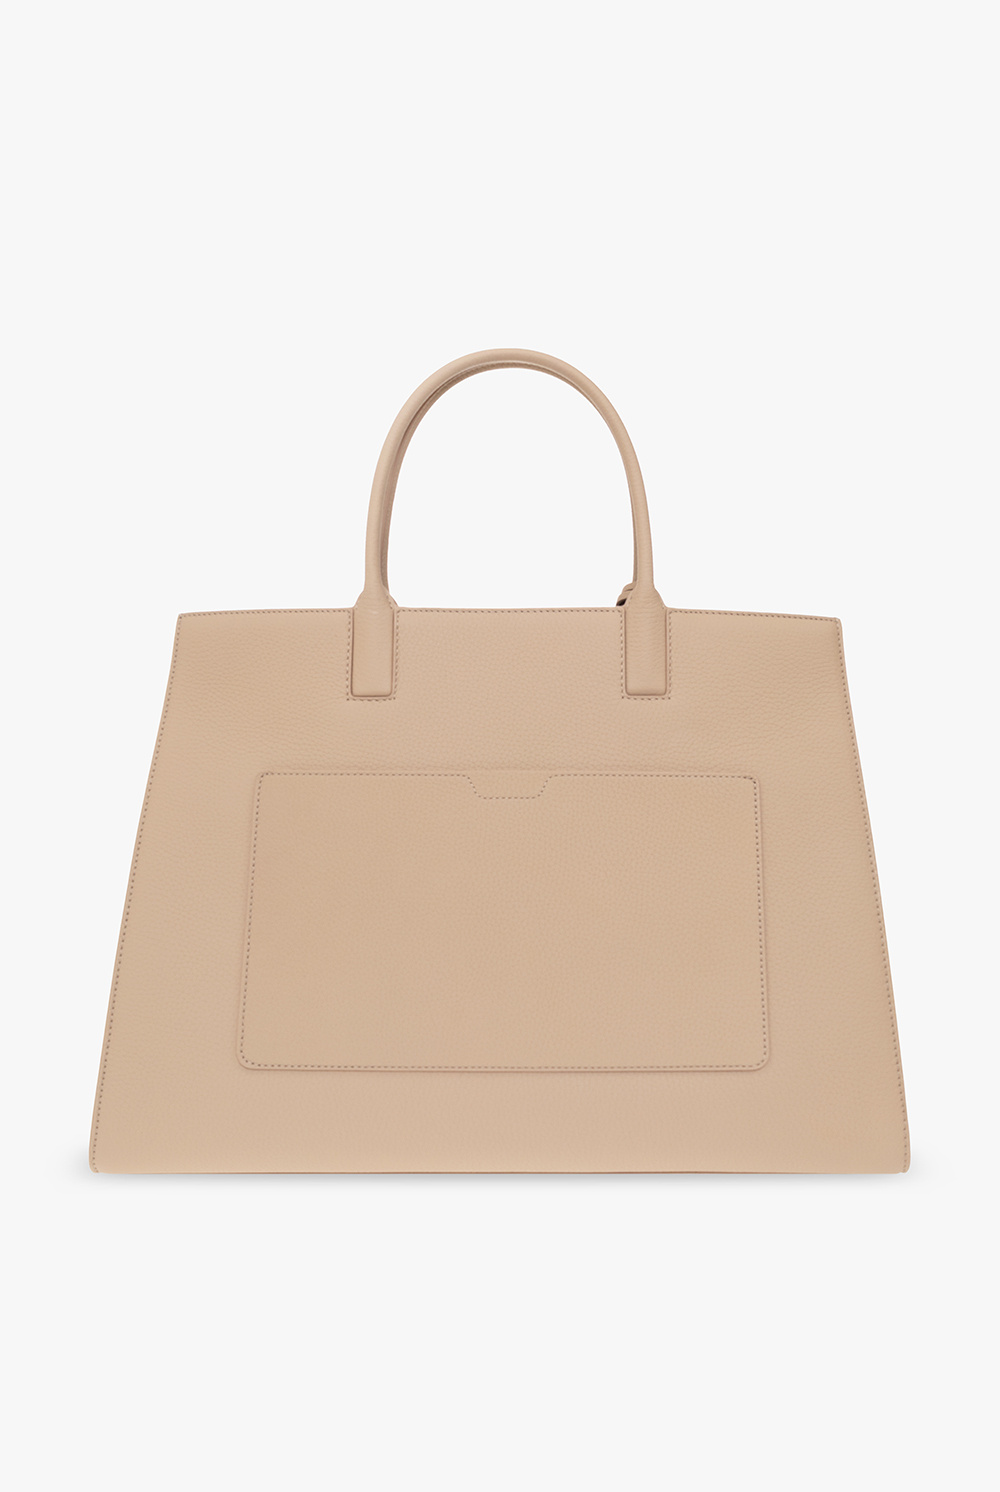 Burberry ‘Frances Medium’ bag